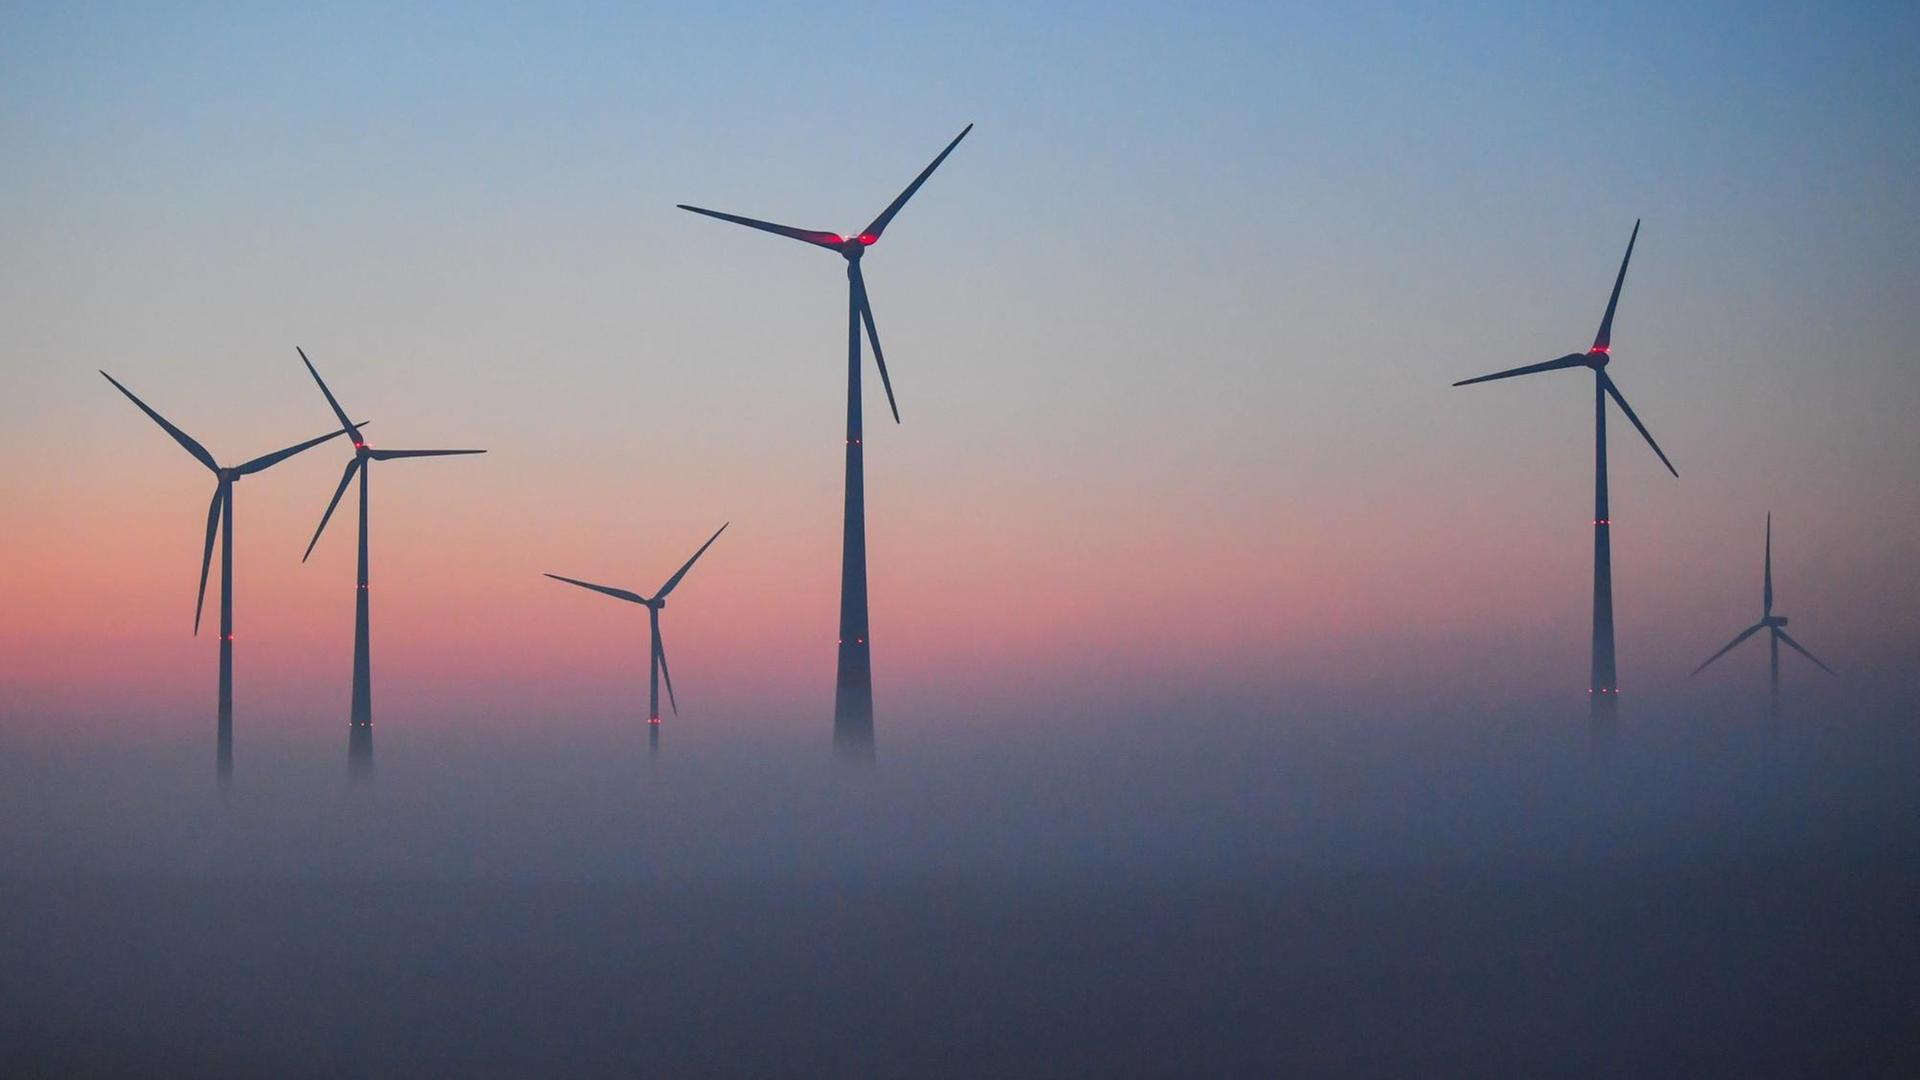 Vor dem farbenprächtigen Morgenhimmel ragen Windenergieanlagen aus dem Nebel.